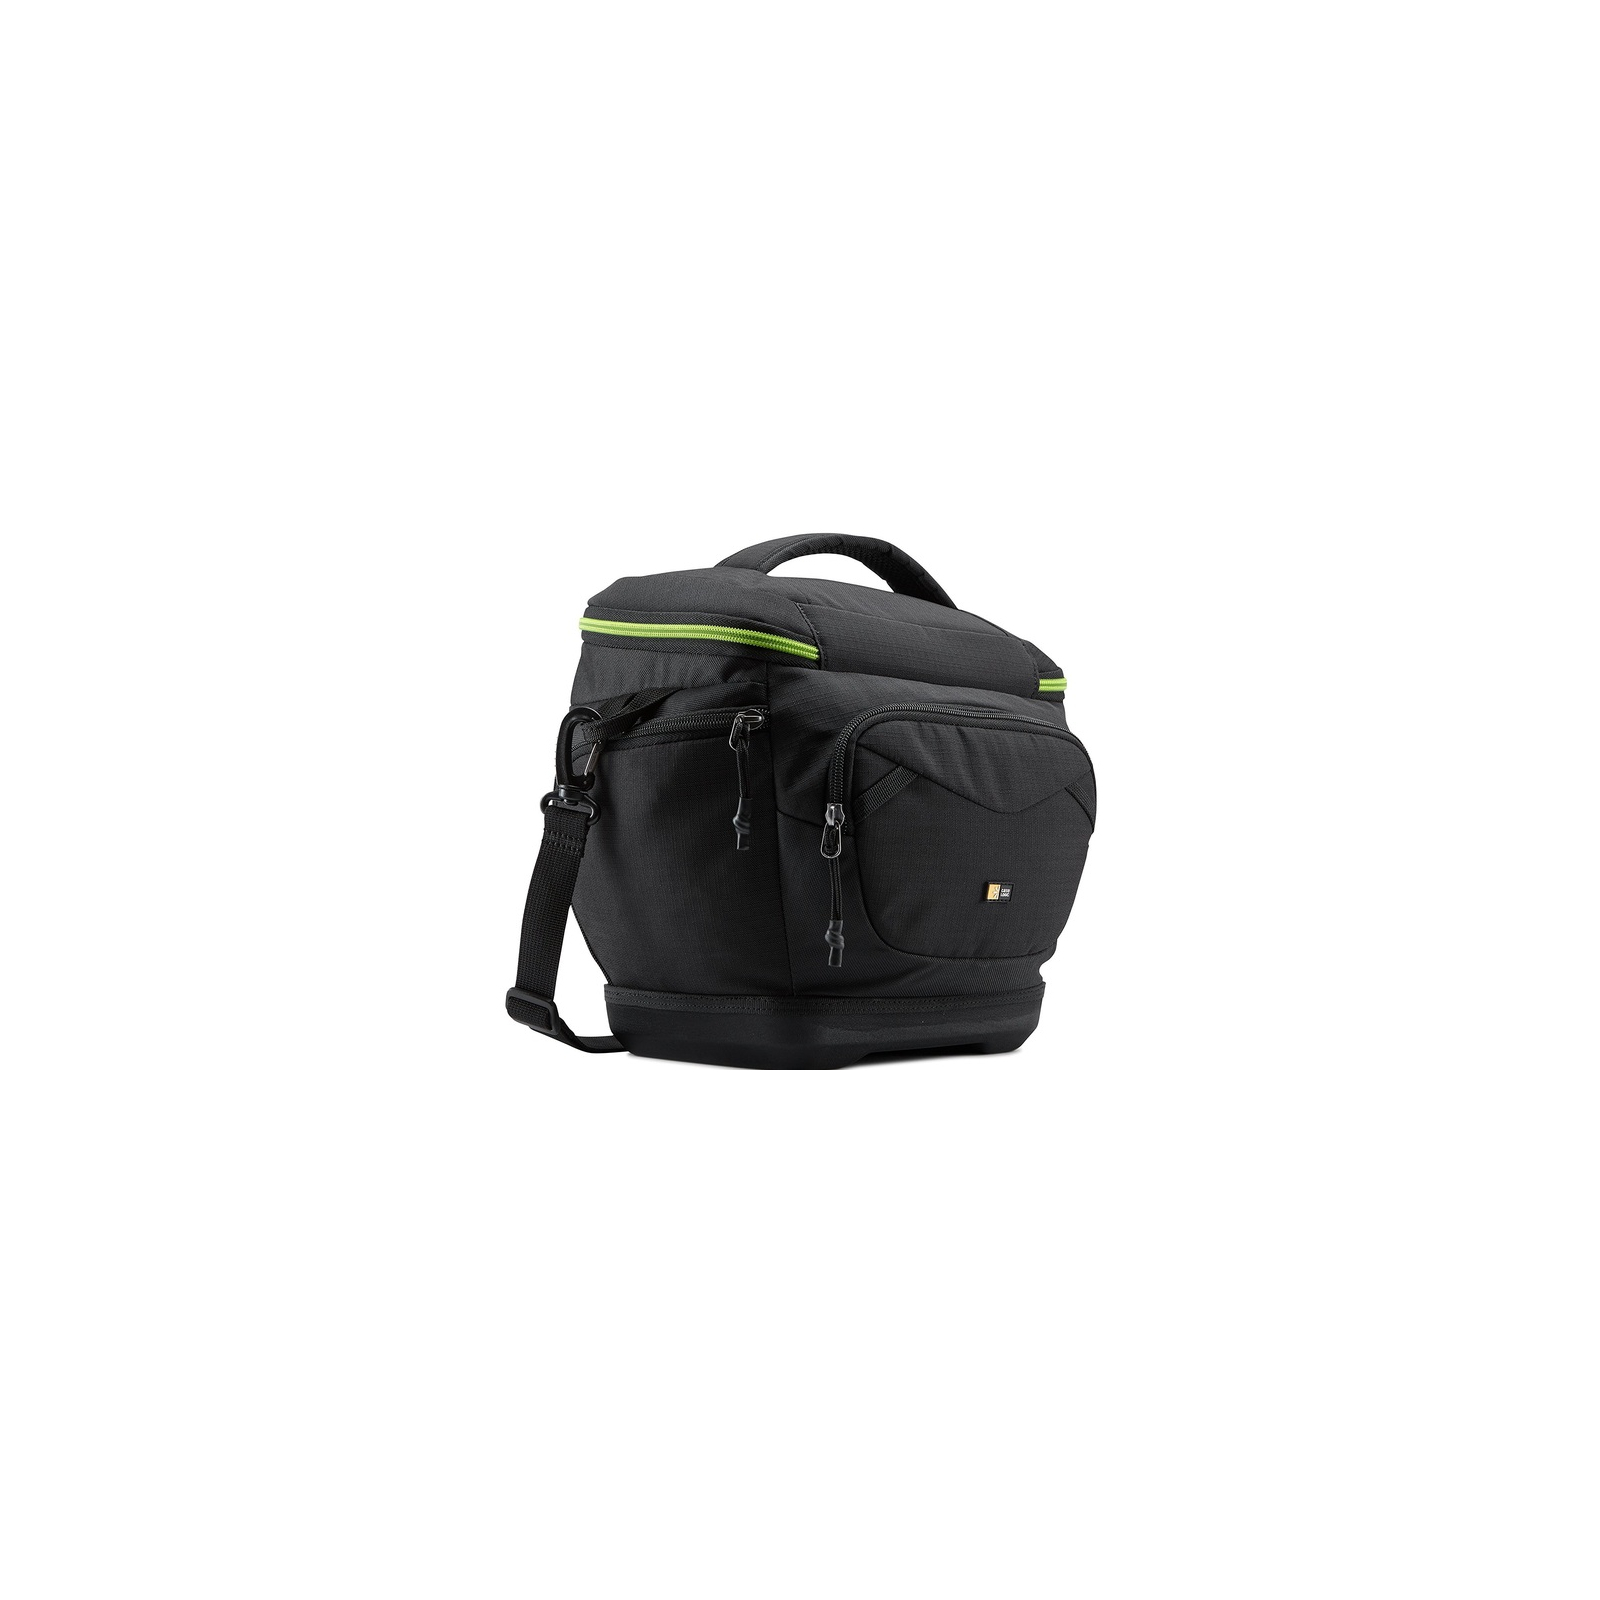 Фото-сумка Case Logic Kontrast M Shoulder Bag DILC KDM-102 Black (3202928)